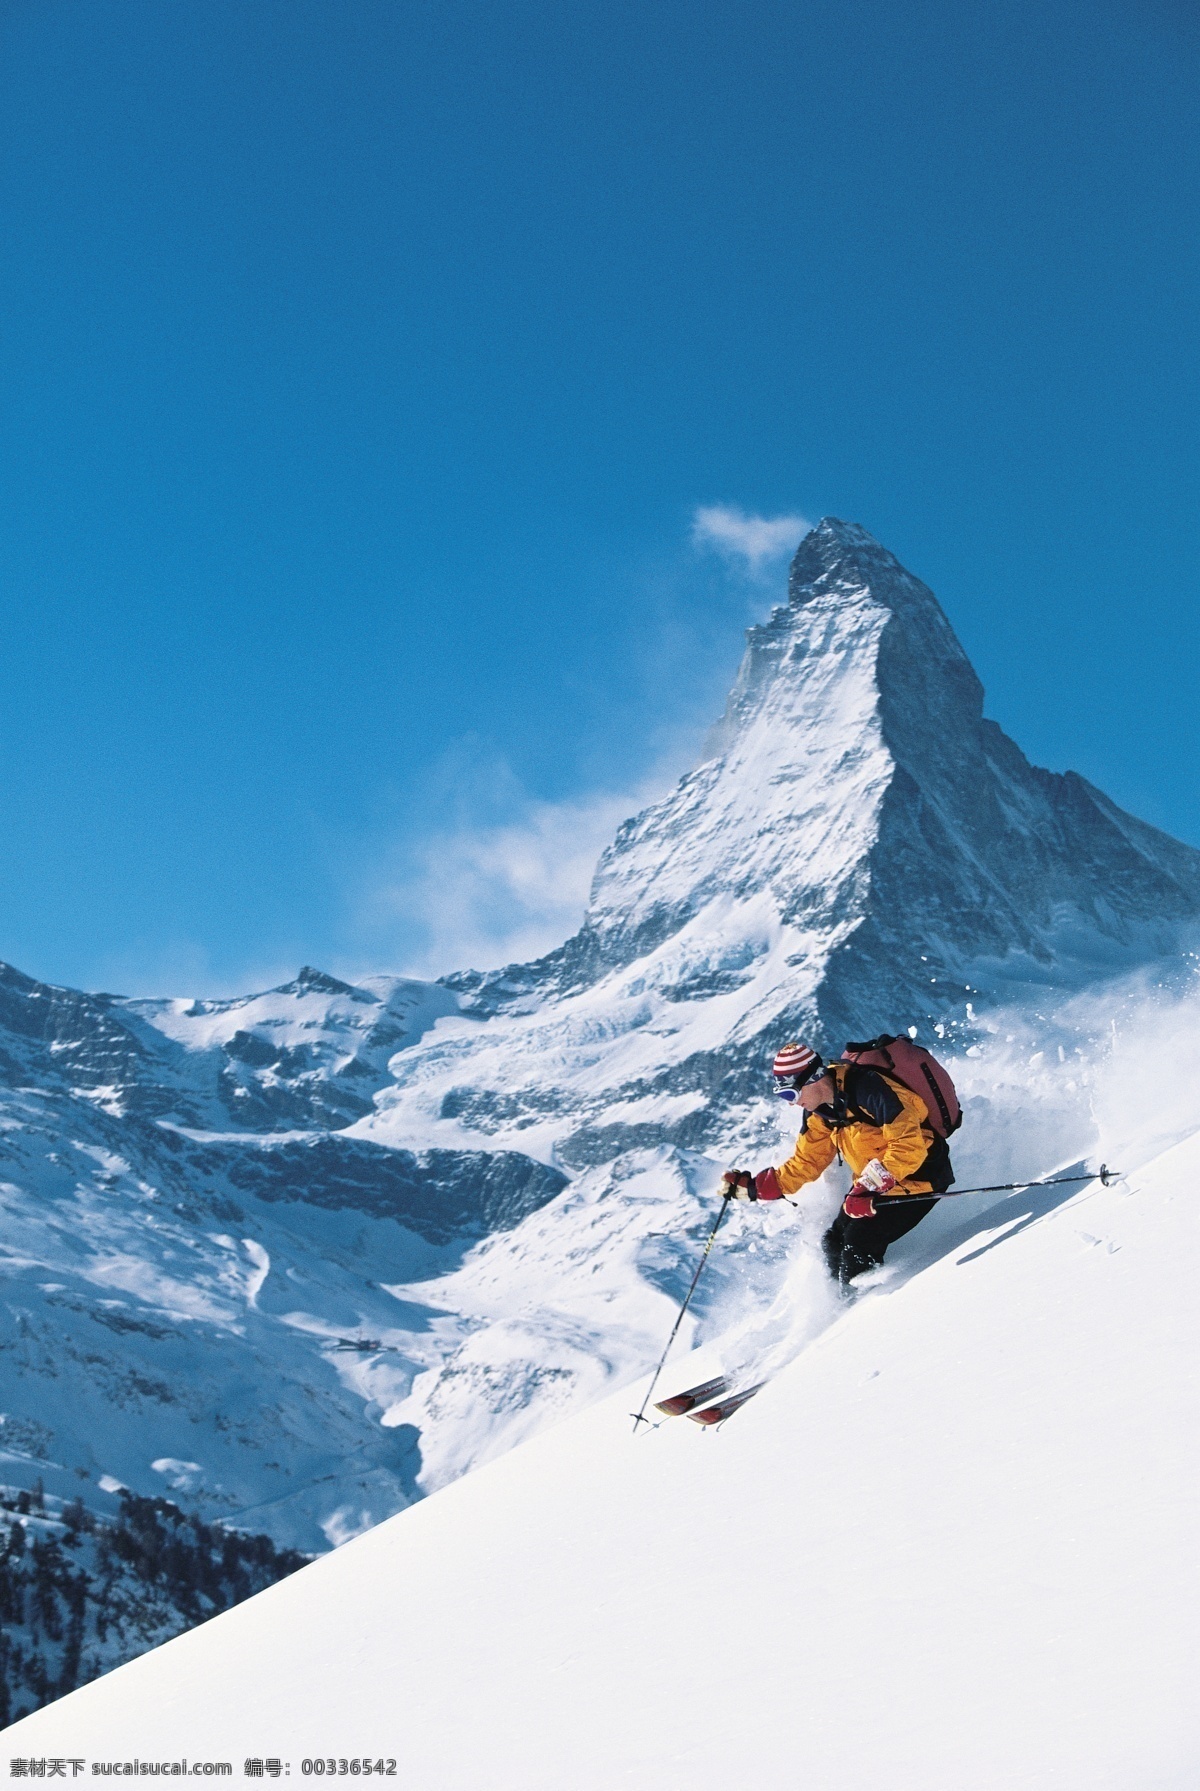 雪山 上 运动员 高清 冬天 雪地运动 划雪运动 极限运动 体育项目 下滑 速度 运动图片 生活百科 美丽 雪景 风景 摄影图片 高清图片 体育运动 白色